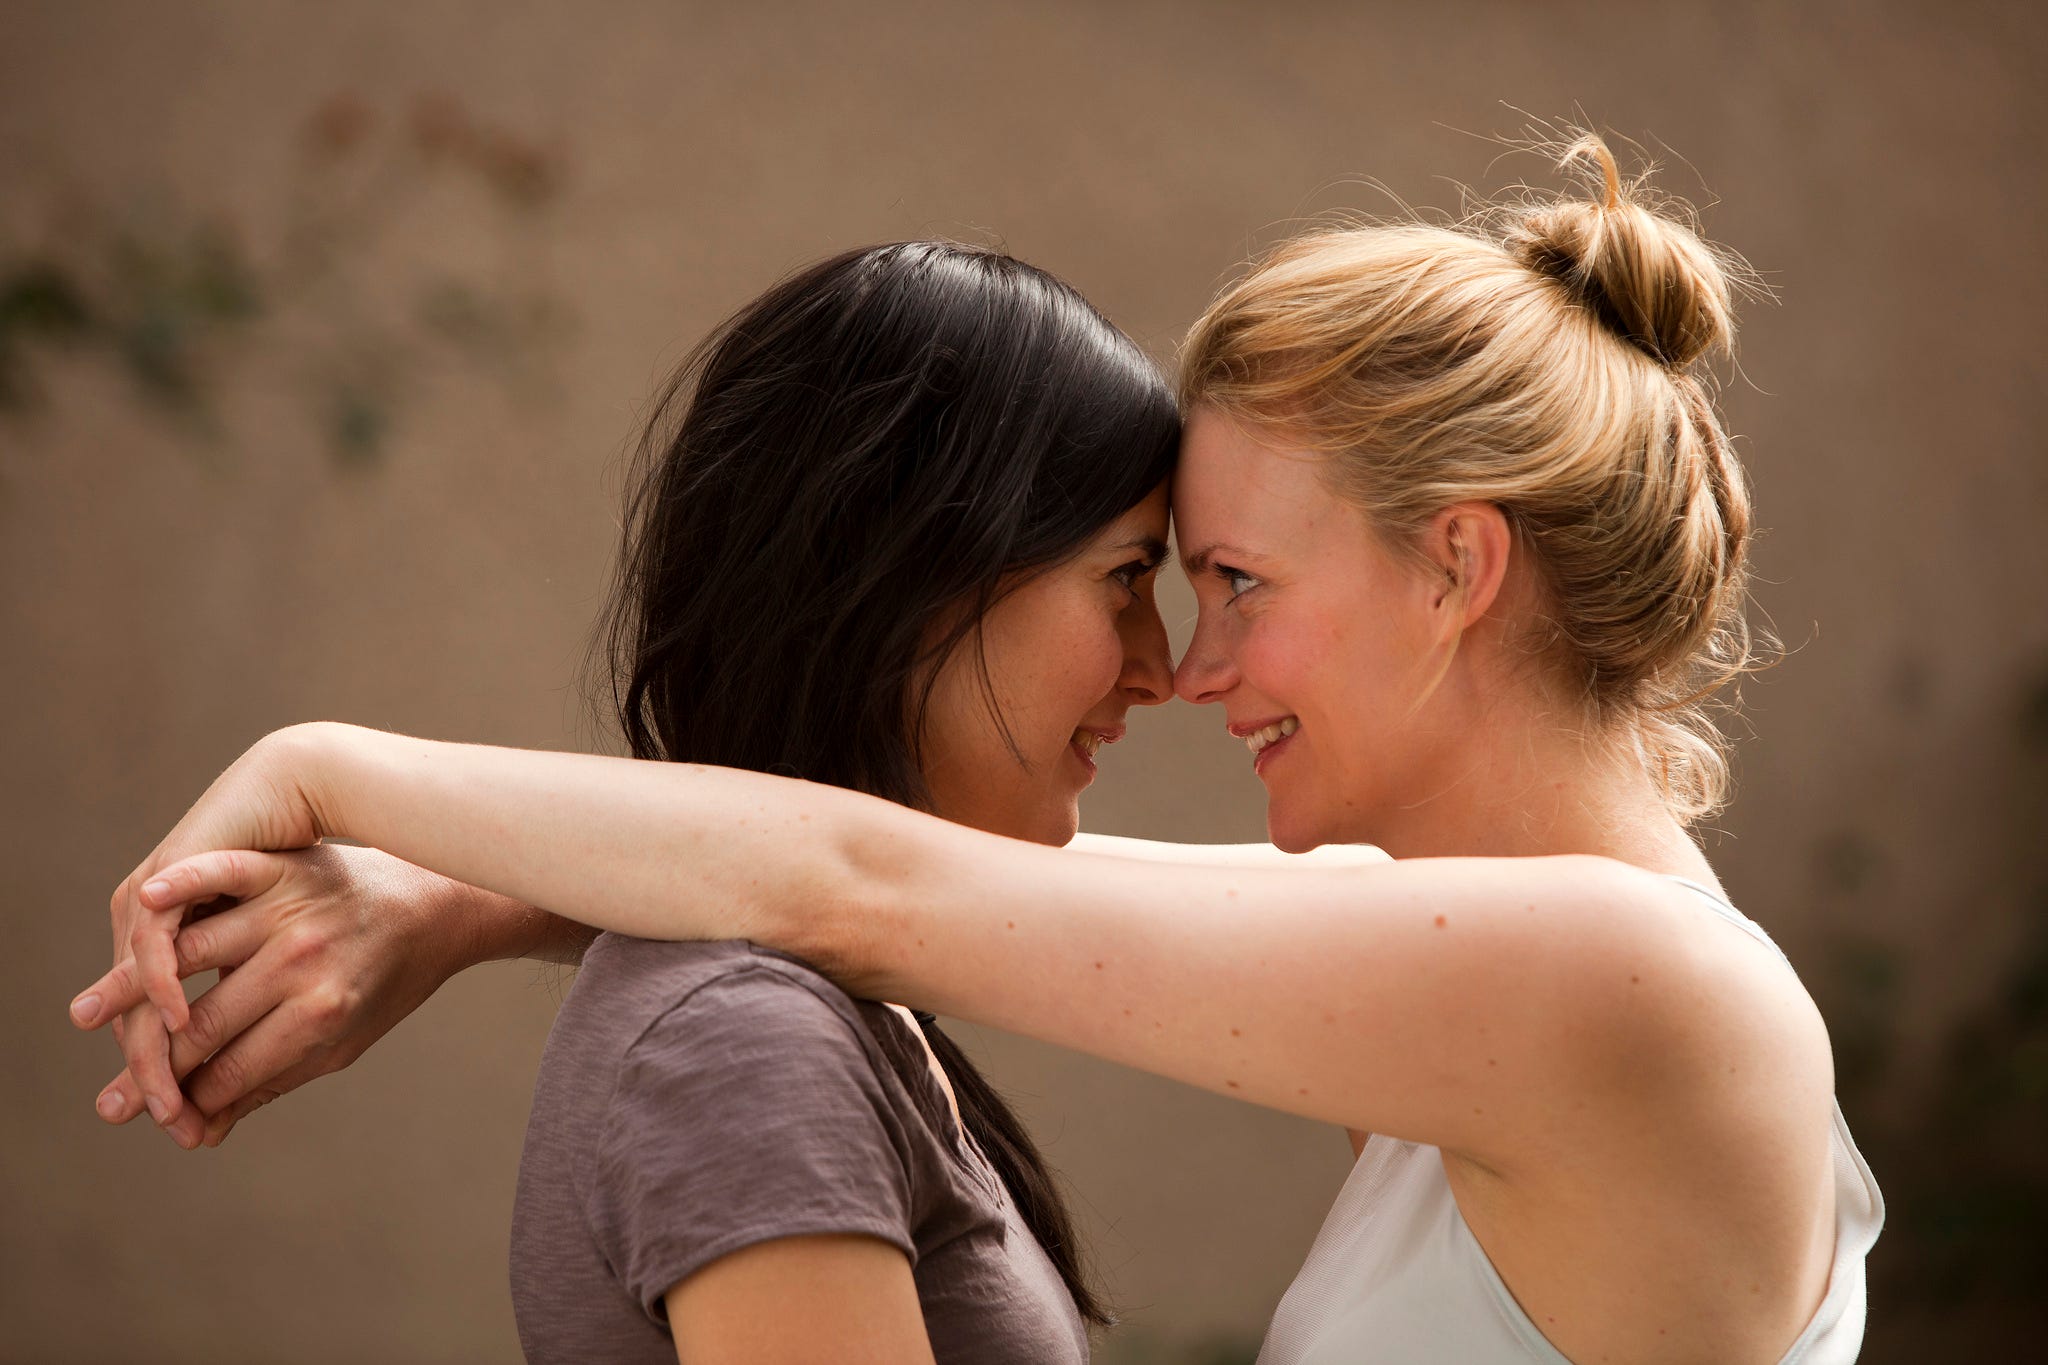 The 20 Greatest Lesbian Films of All Time - by Kira Deshler